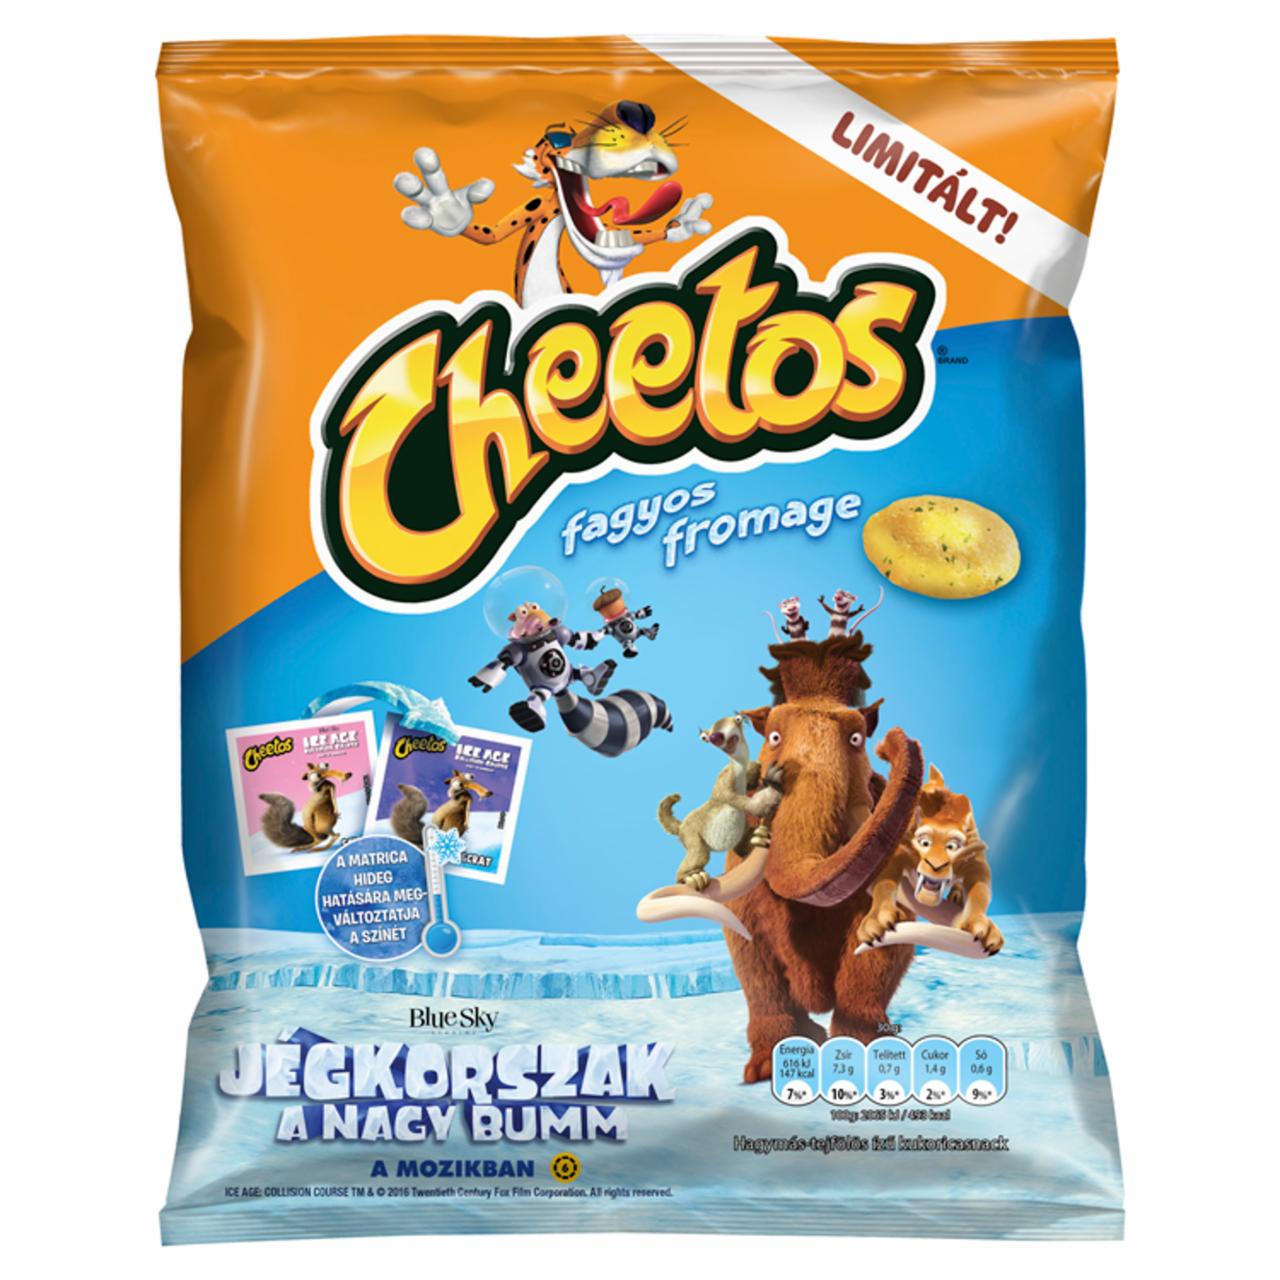 Képek - Cheetos Fagyos Fromage hagymás-tejfölös ízű kukoricasnack 45 g